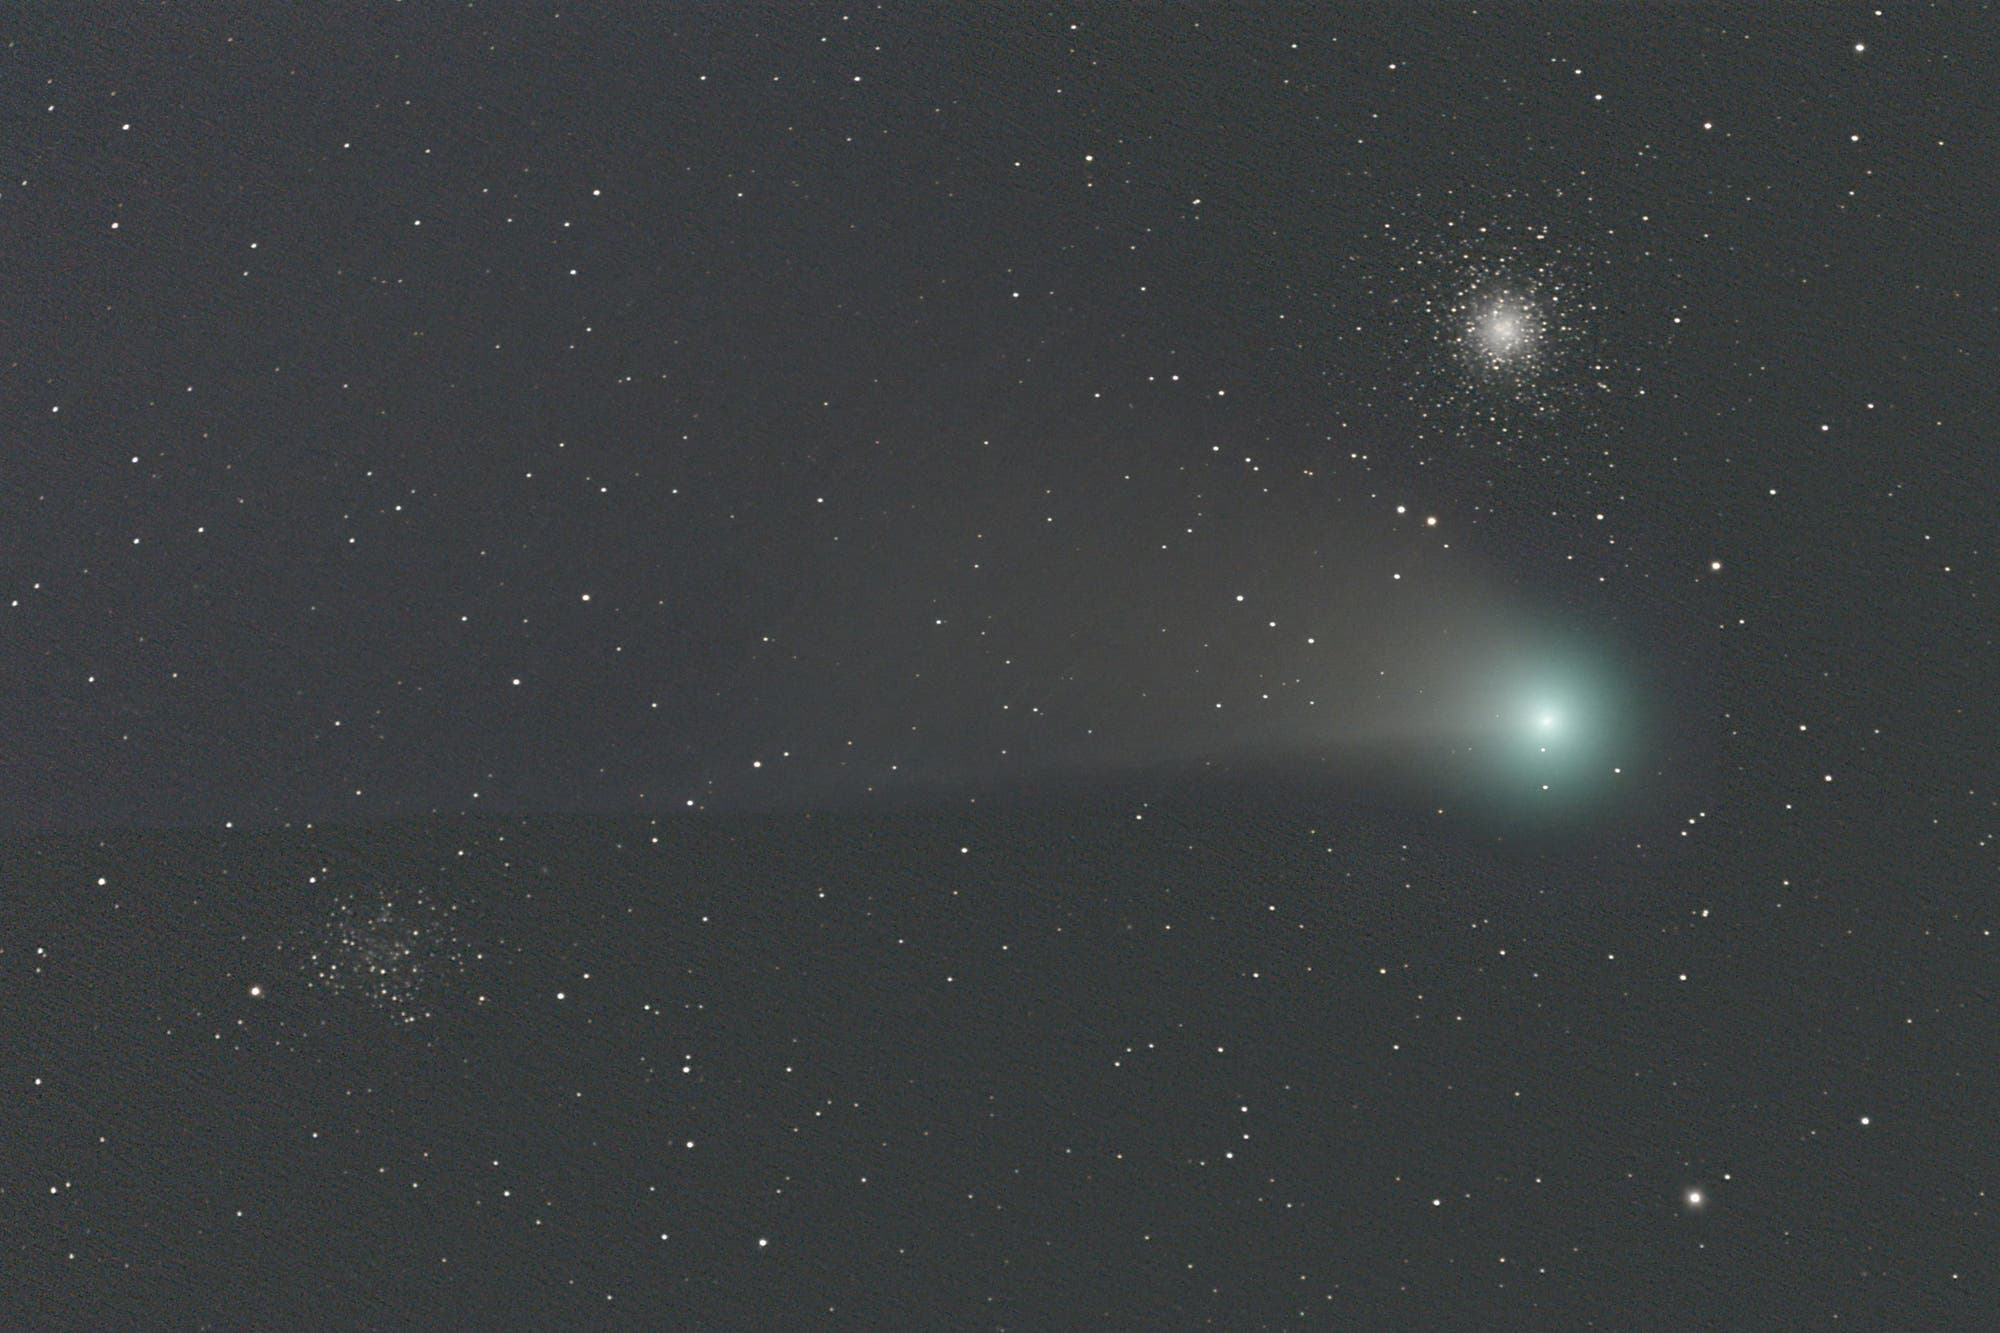 Komet C/2020 F3 NEOWISE bei Messier 53 und NGC 5053